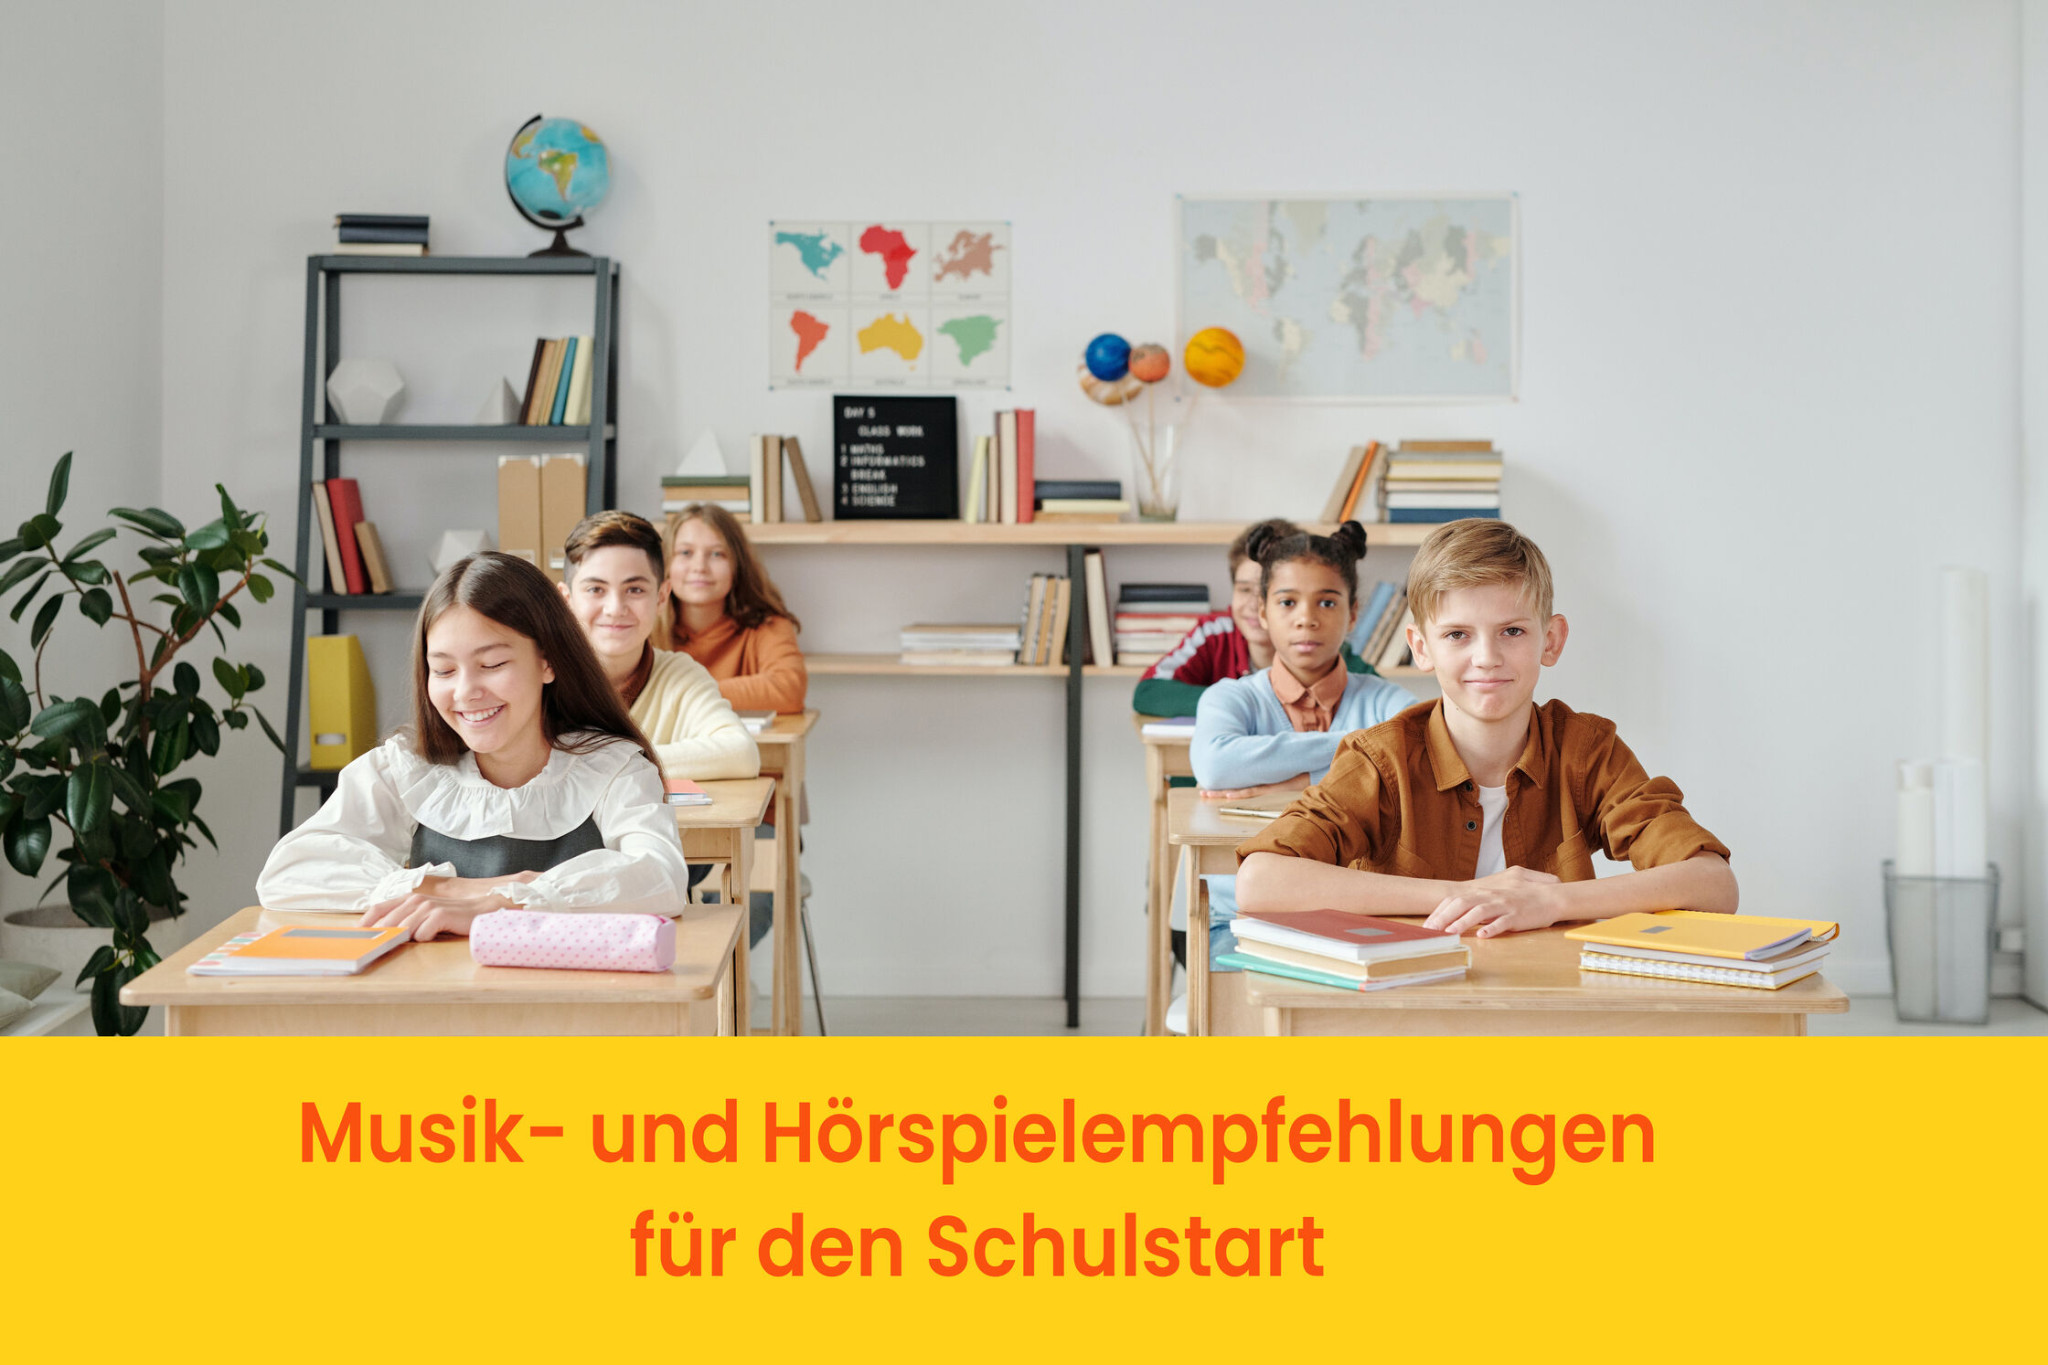 Musik- und Hörspielempfehlungen für den Schulstart!